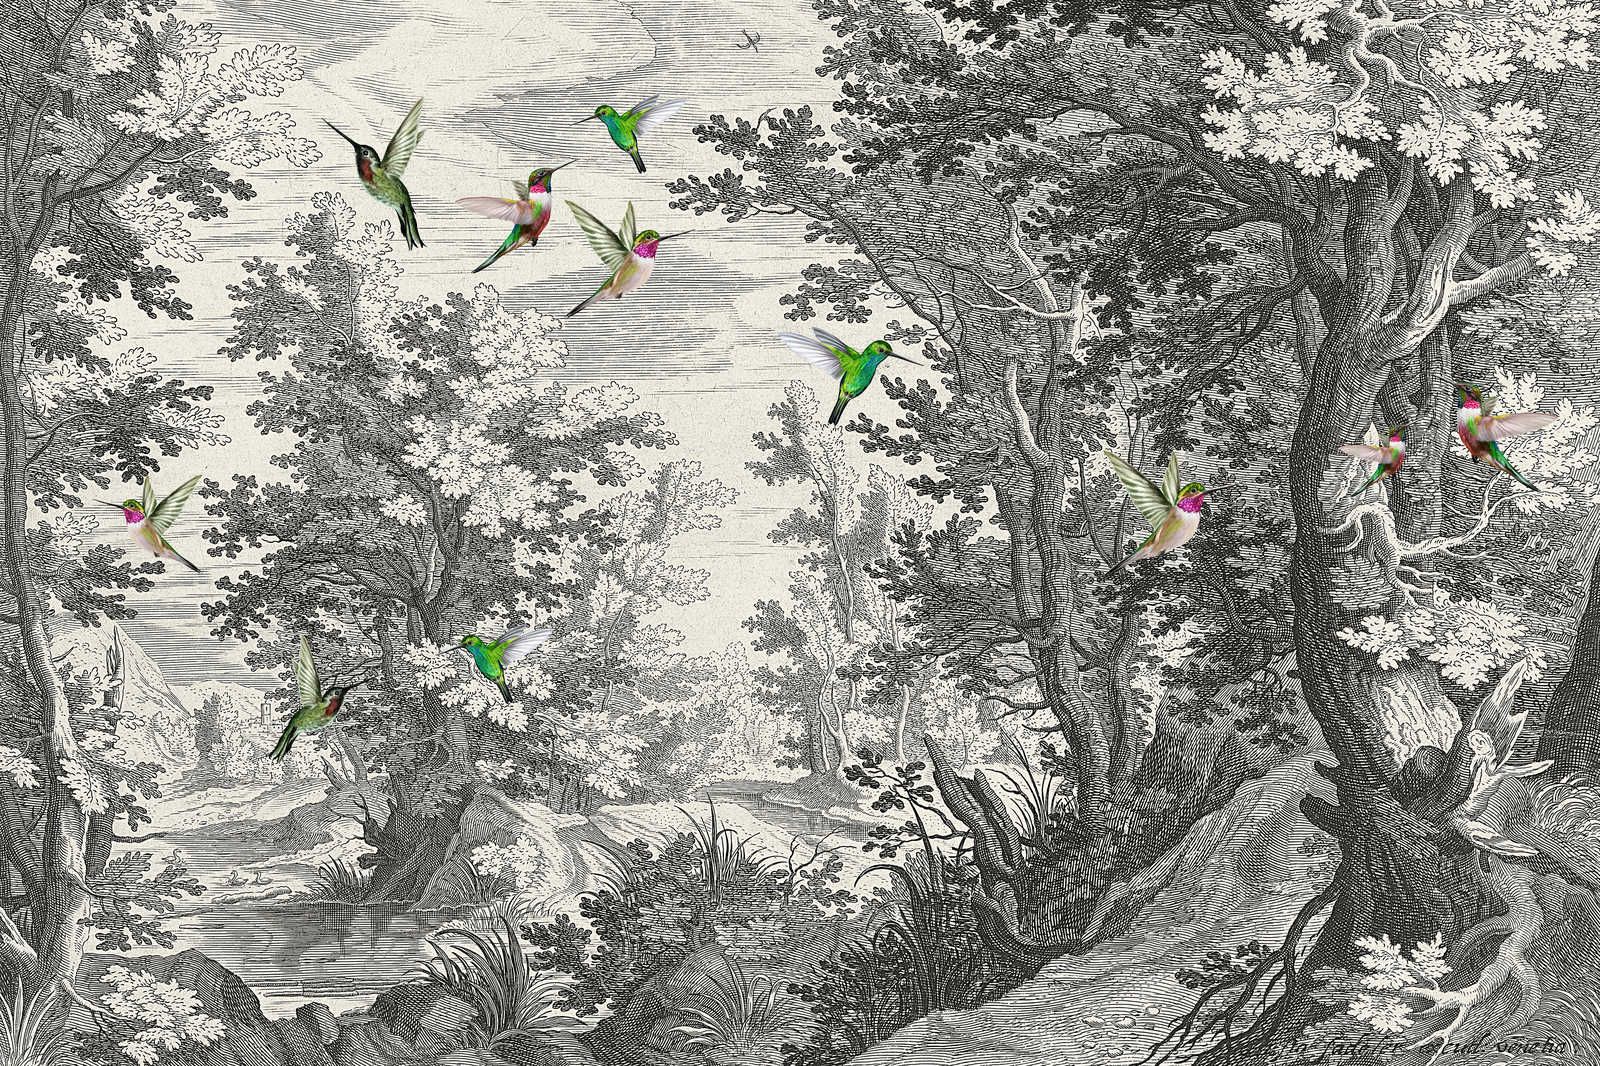             Fancy Forest 1 - Paysage toile impression d'art avec des oiseaux - 0,90 m x 0,60 m
        